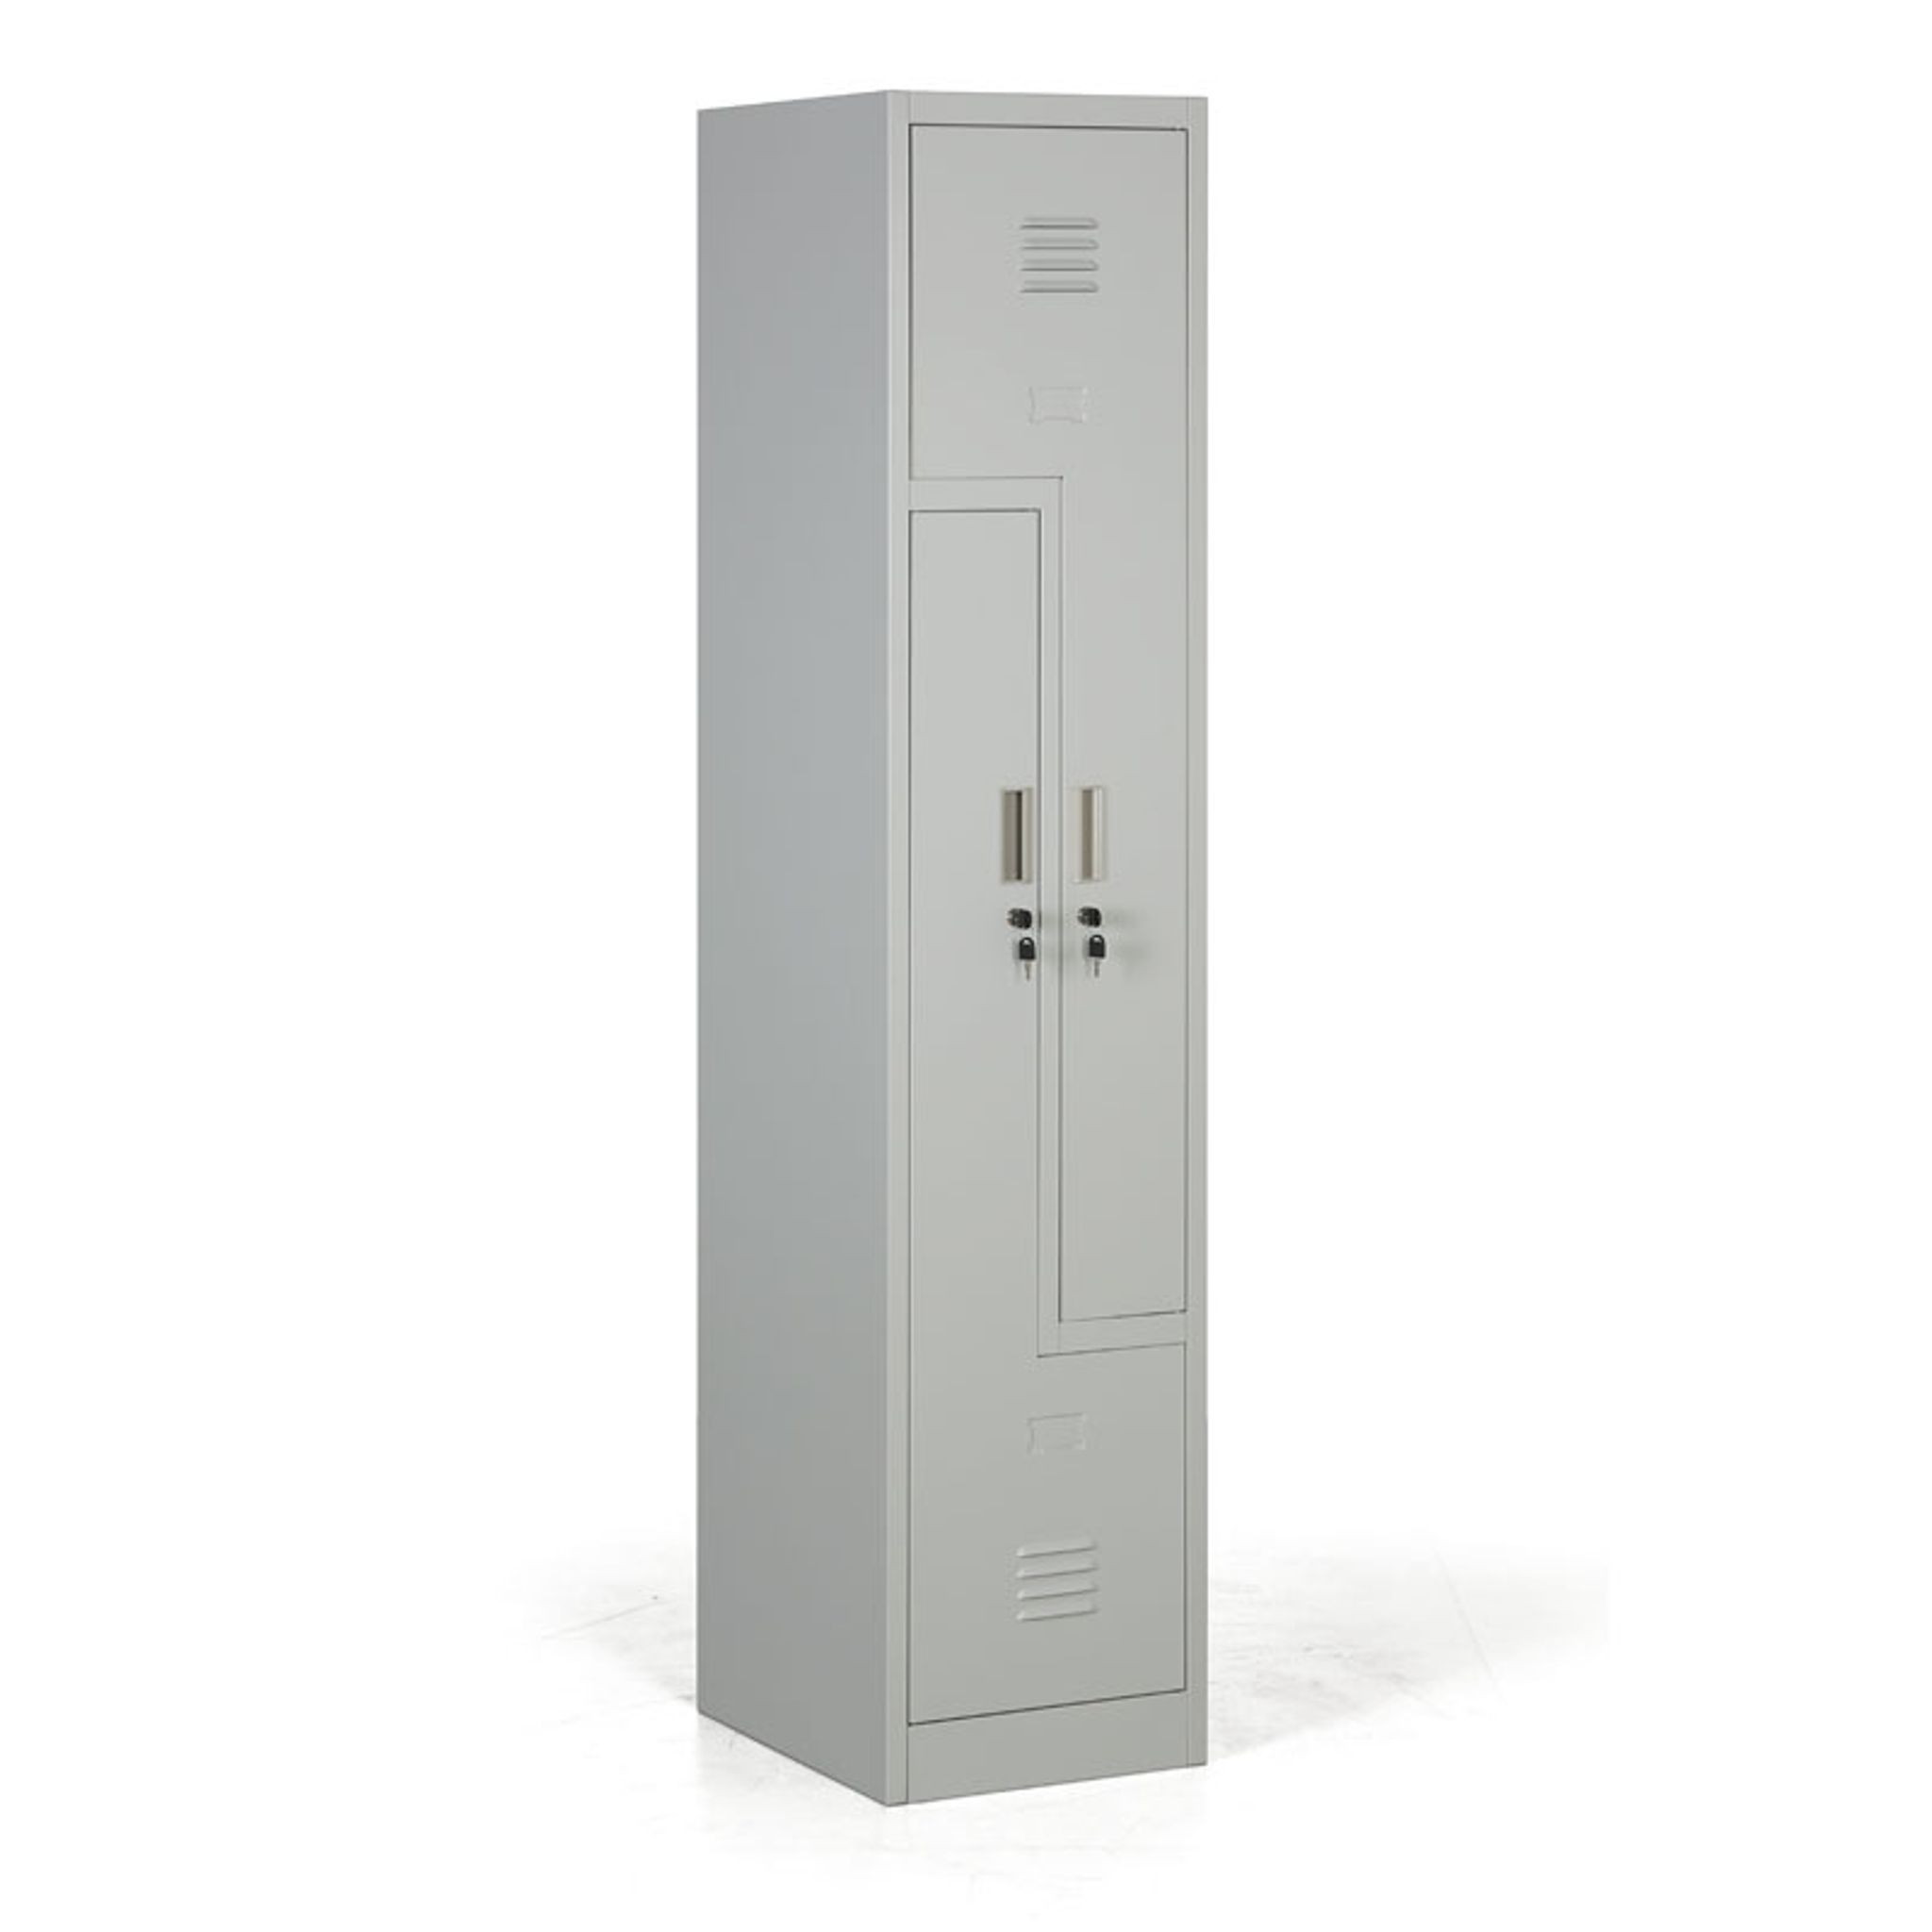 Metalowa szafka ubraniowa Z, 2 przegródki, zamek cylindryczny, drzwi szare